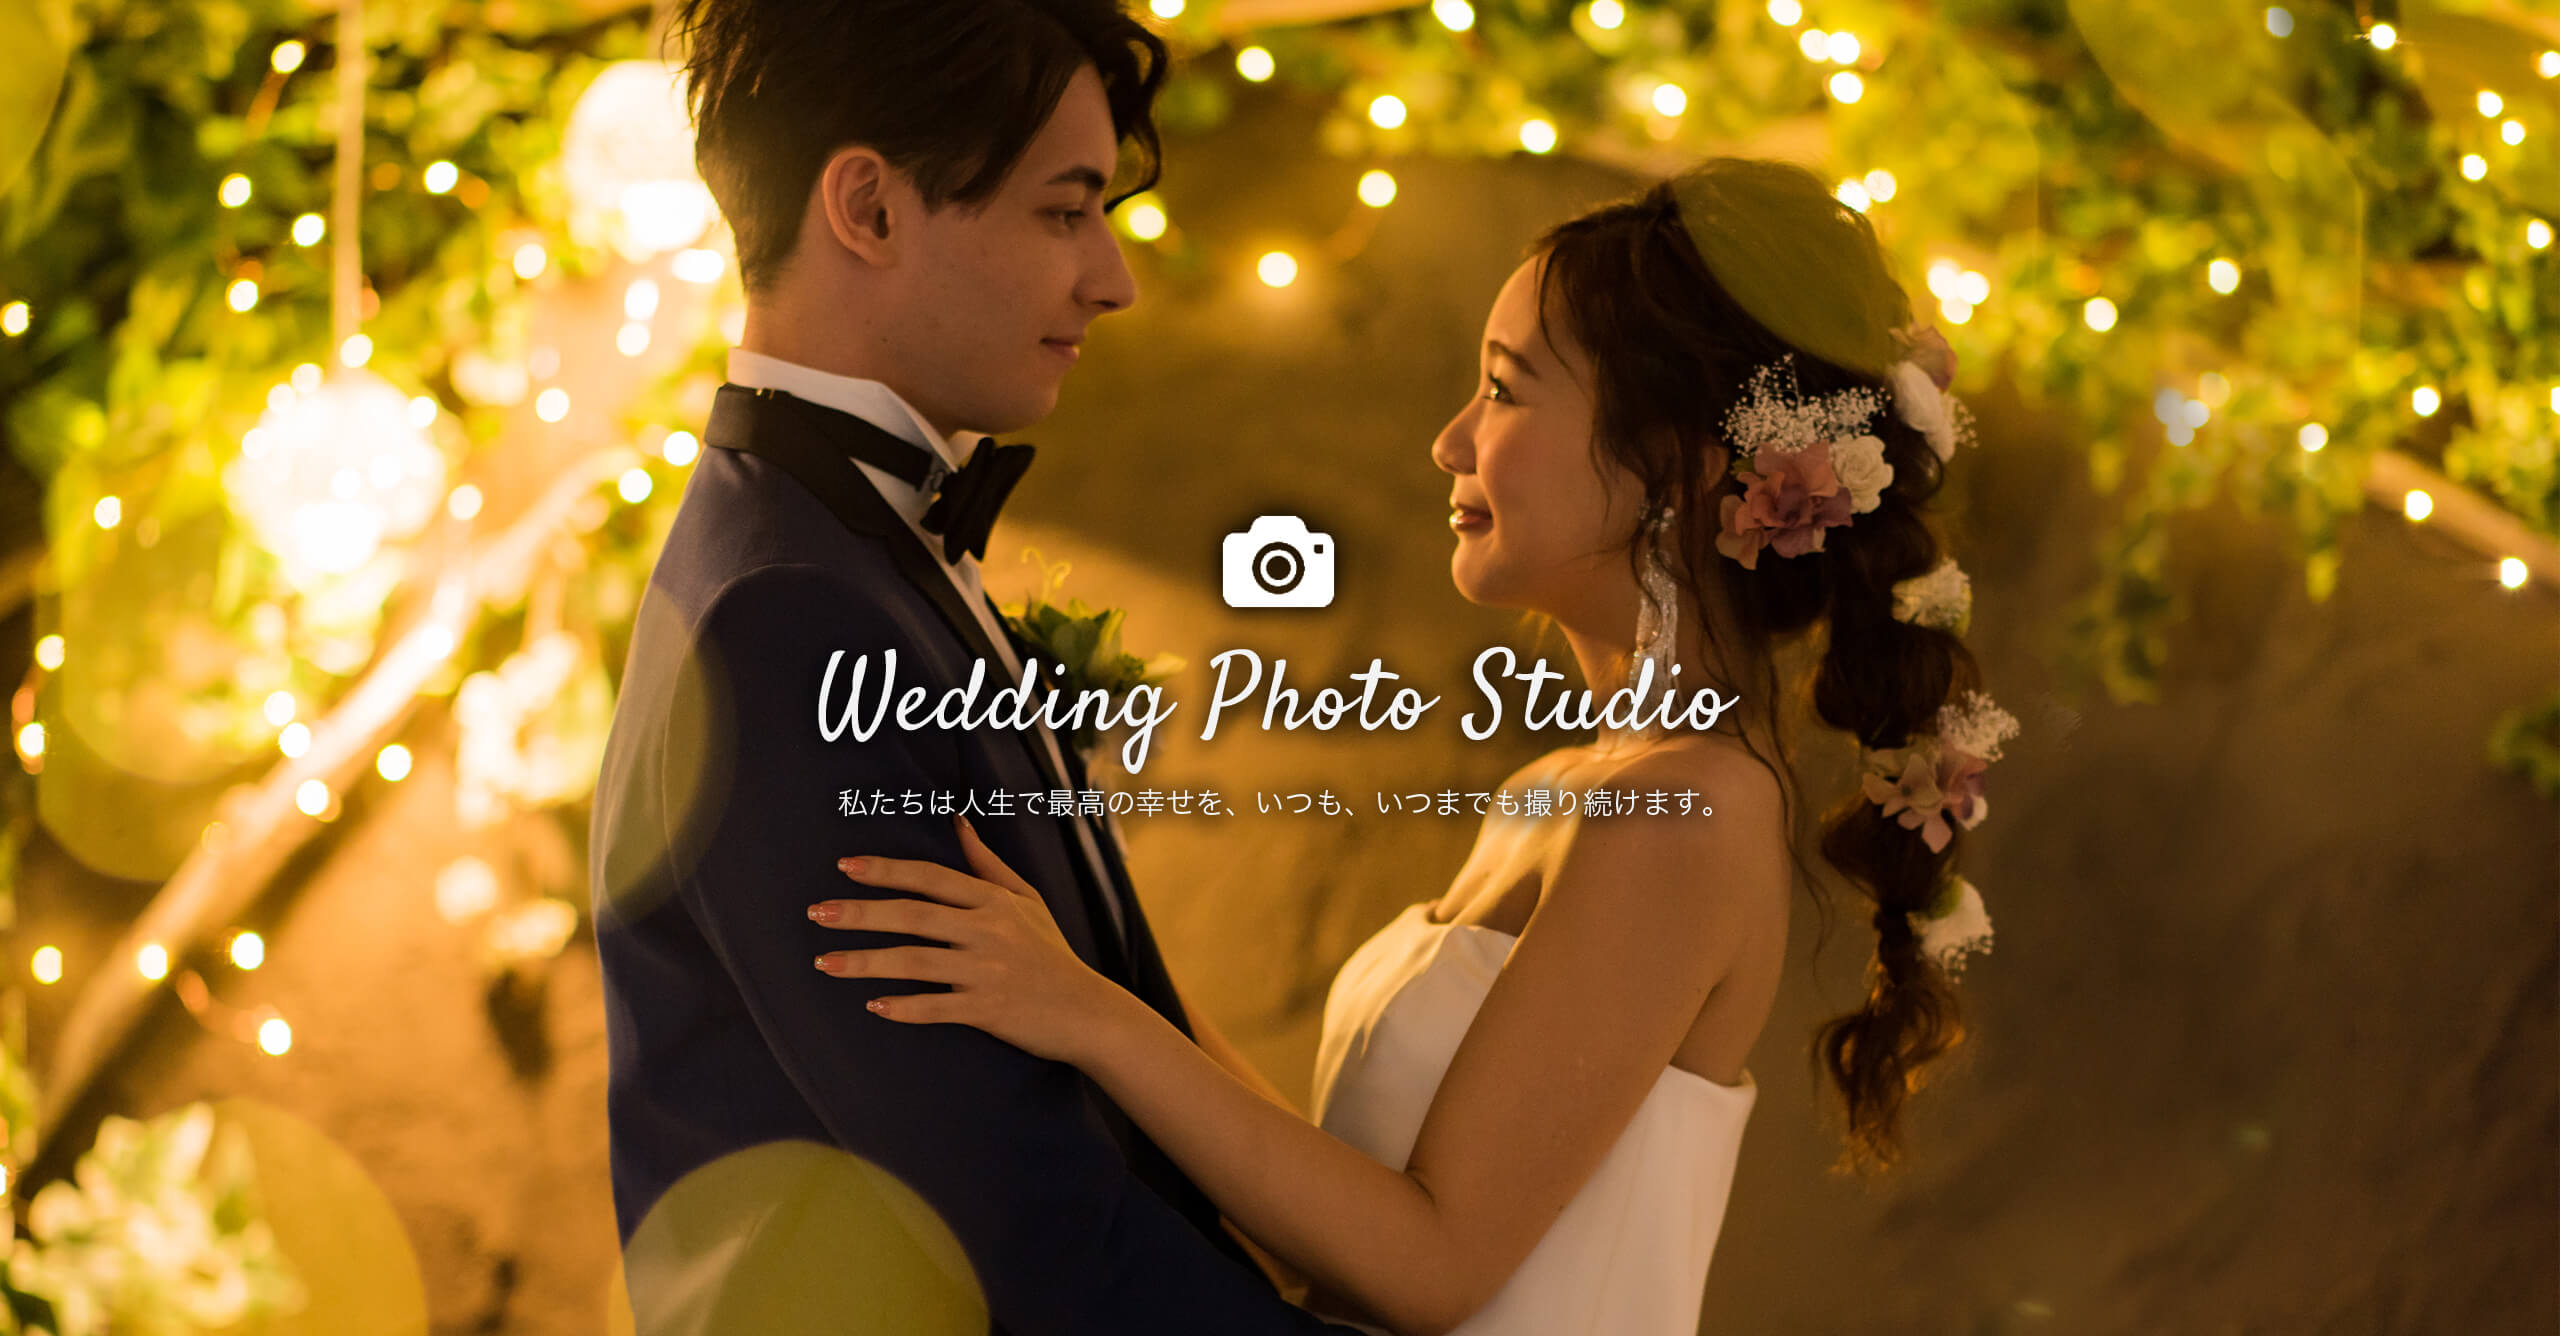 輝く光を背に、ウェディングドレス姿の花嫁とタキシード姿の新郎が向かいあっているフォトウェディングのイメージ｜～Wedding Photo Studio～ 私たちは人生で最高の幸せを、いつも、いつまでも撮り続けます。